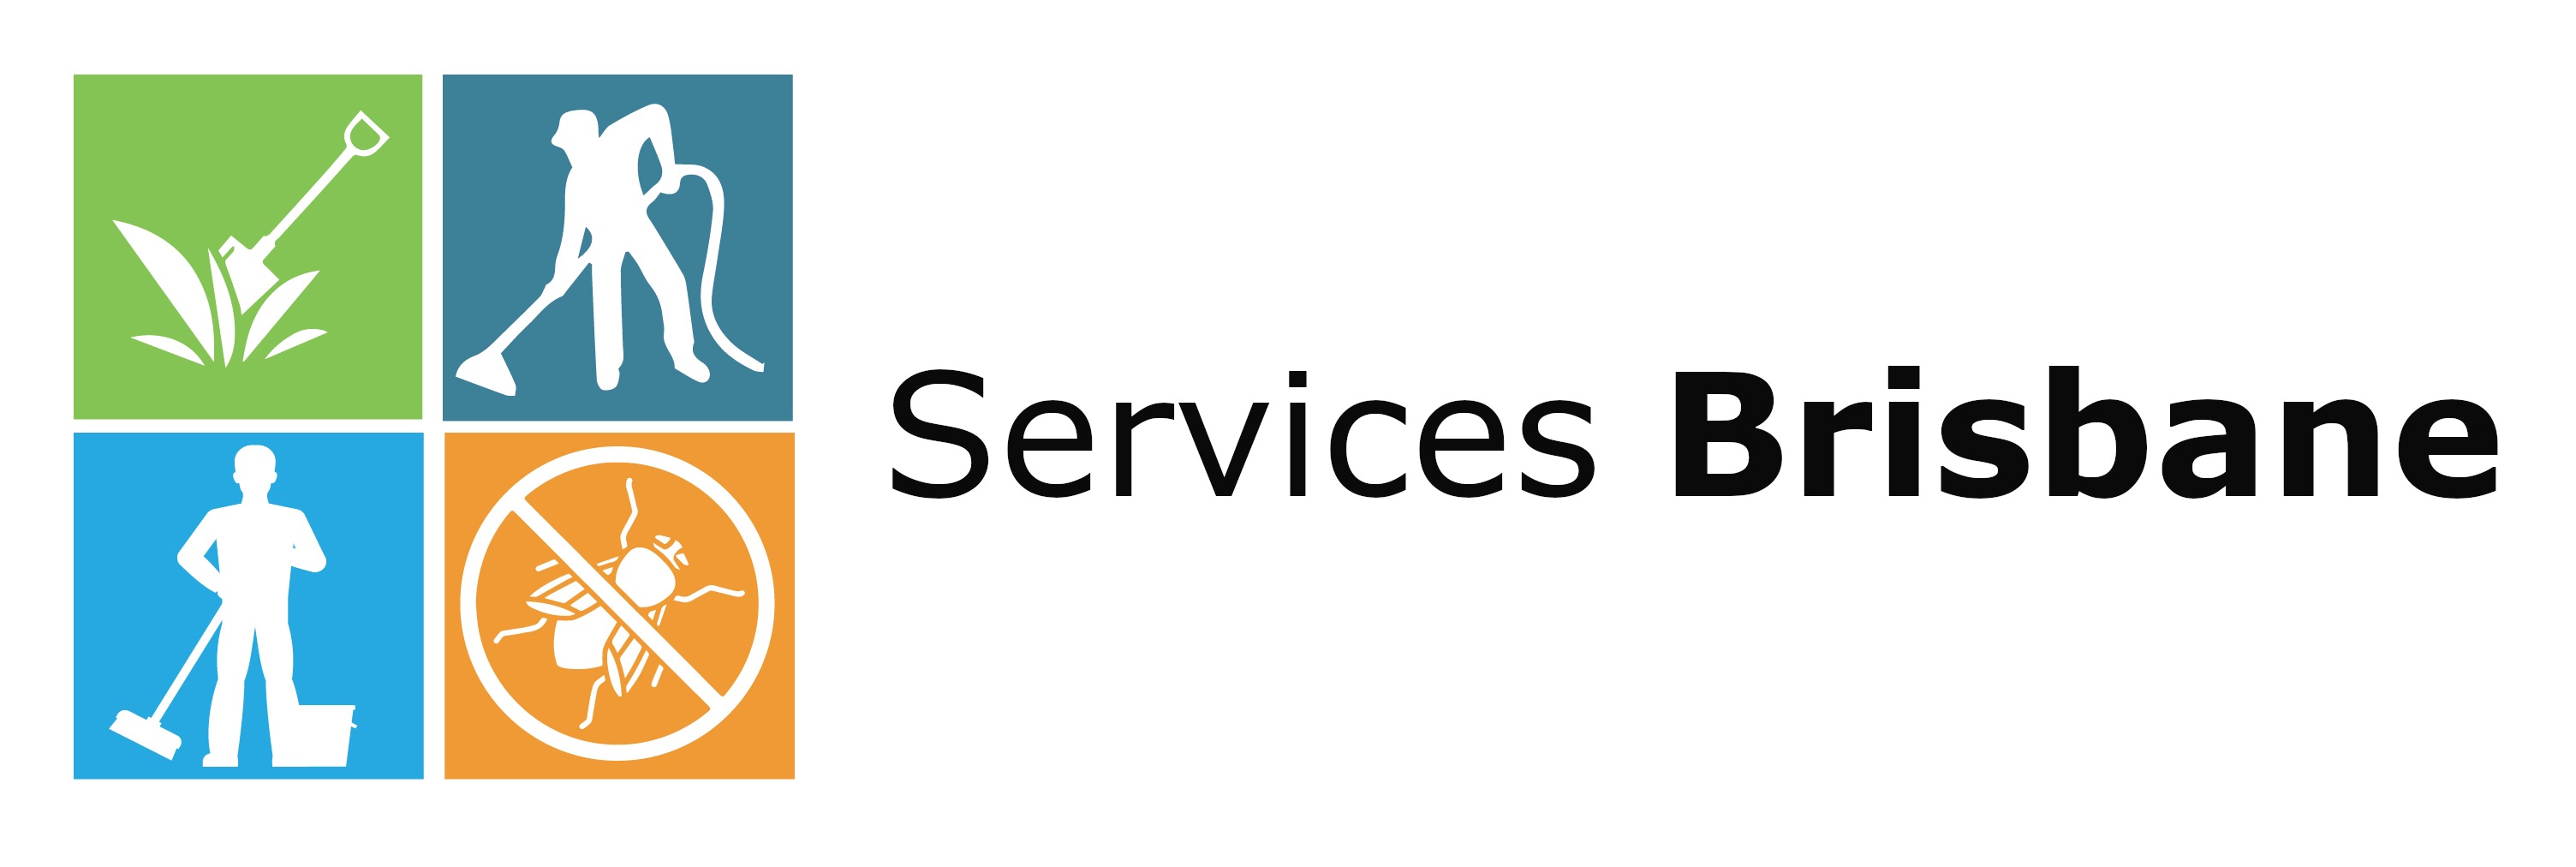 Services Brisbane